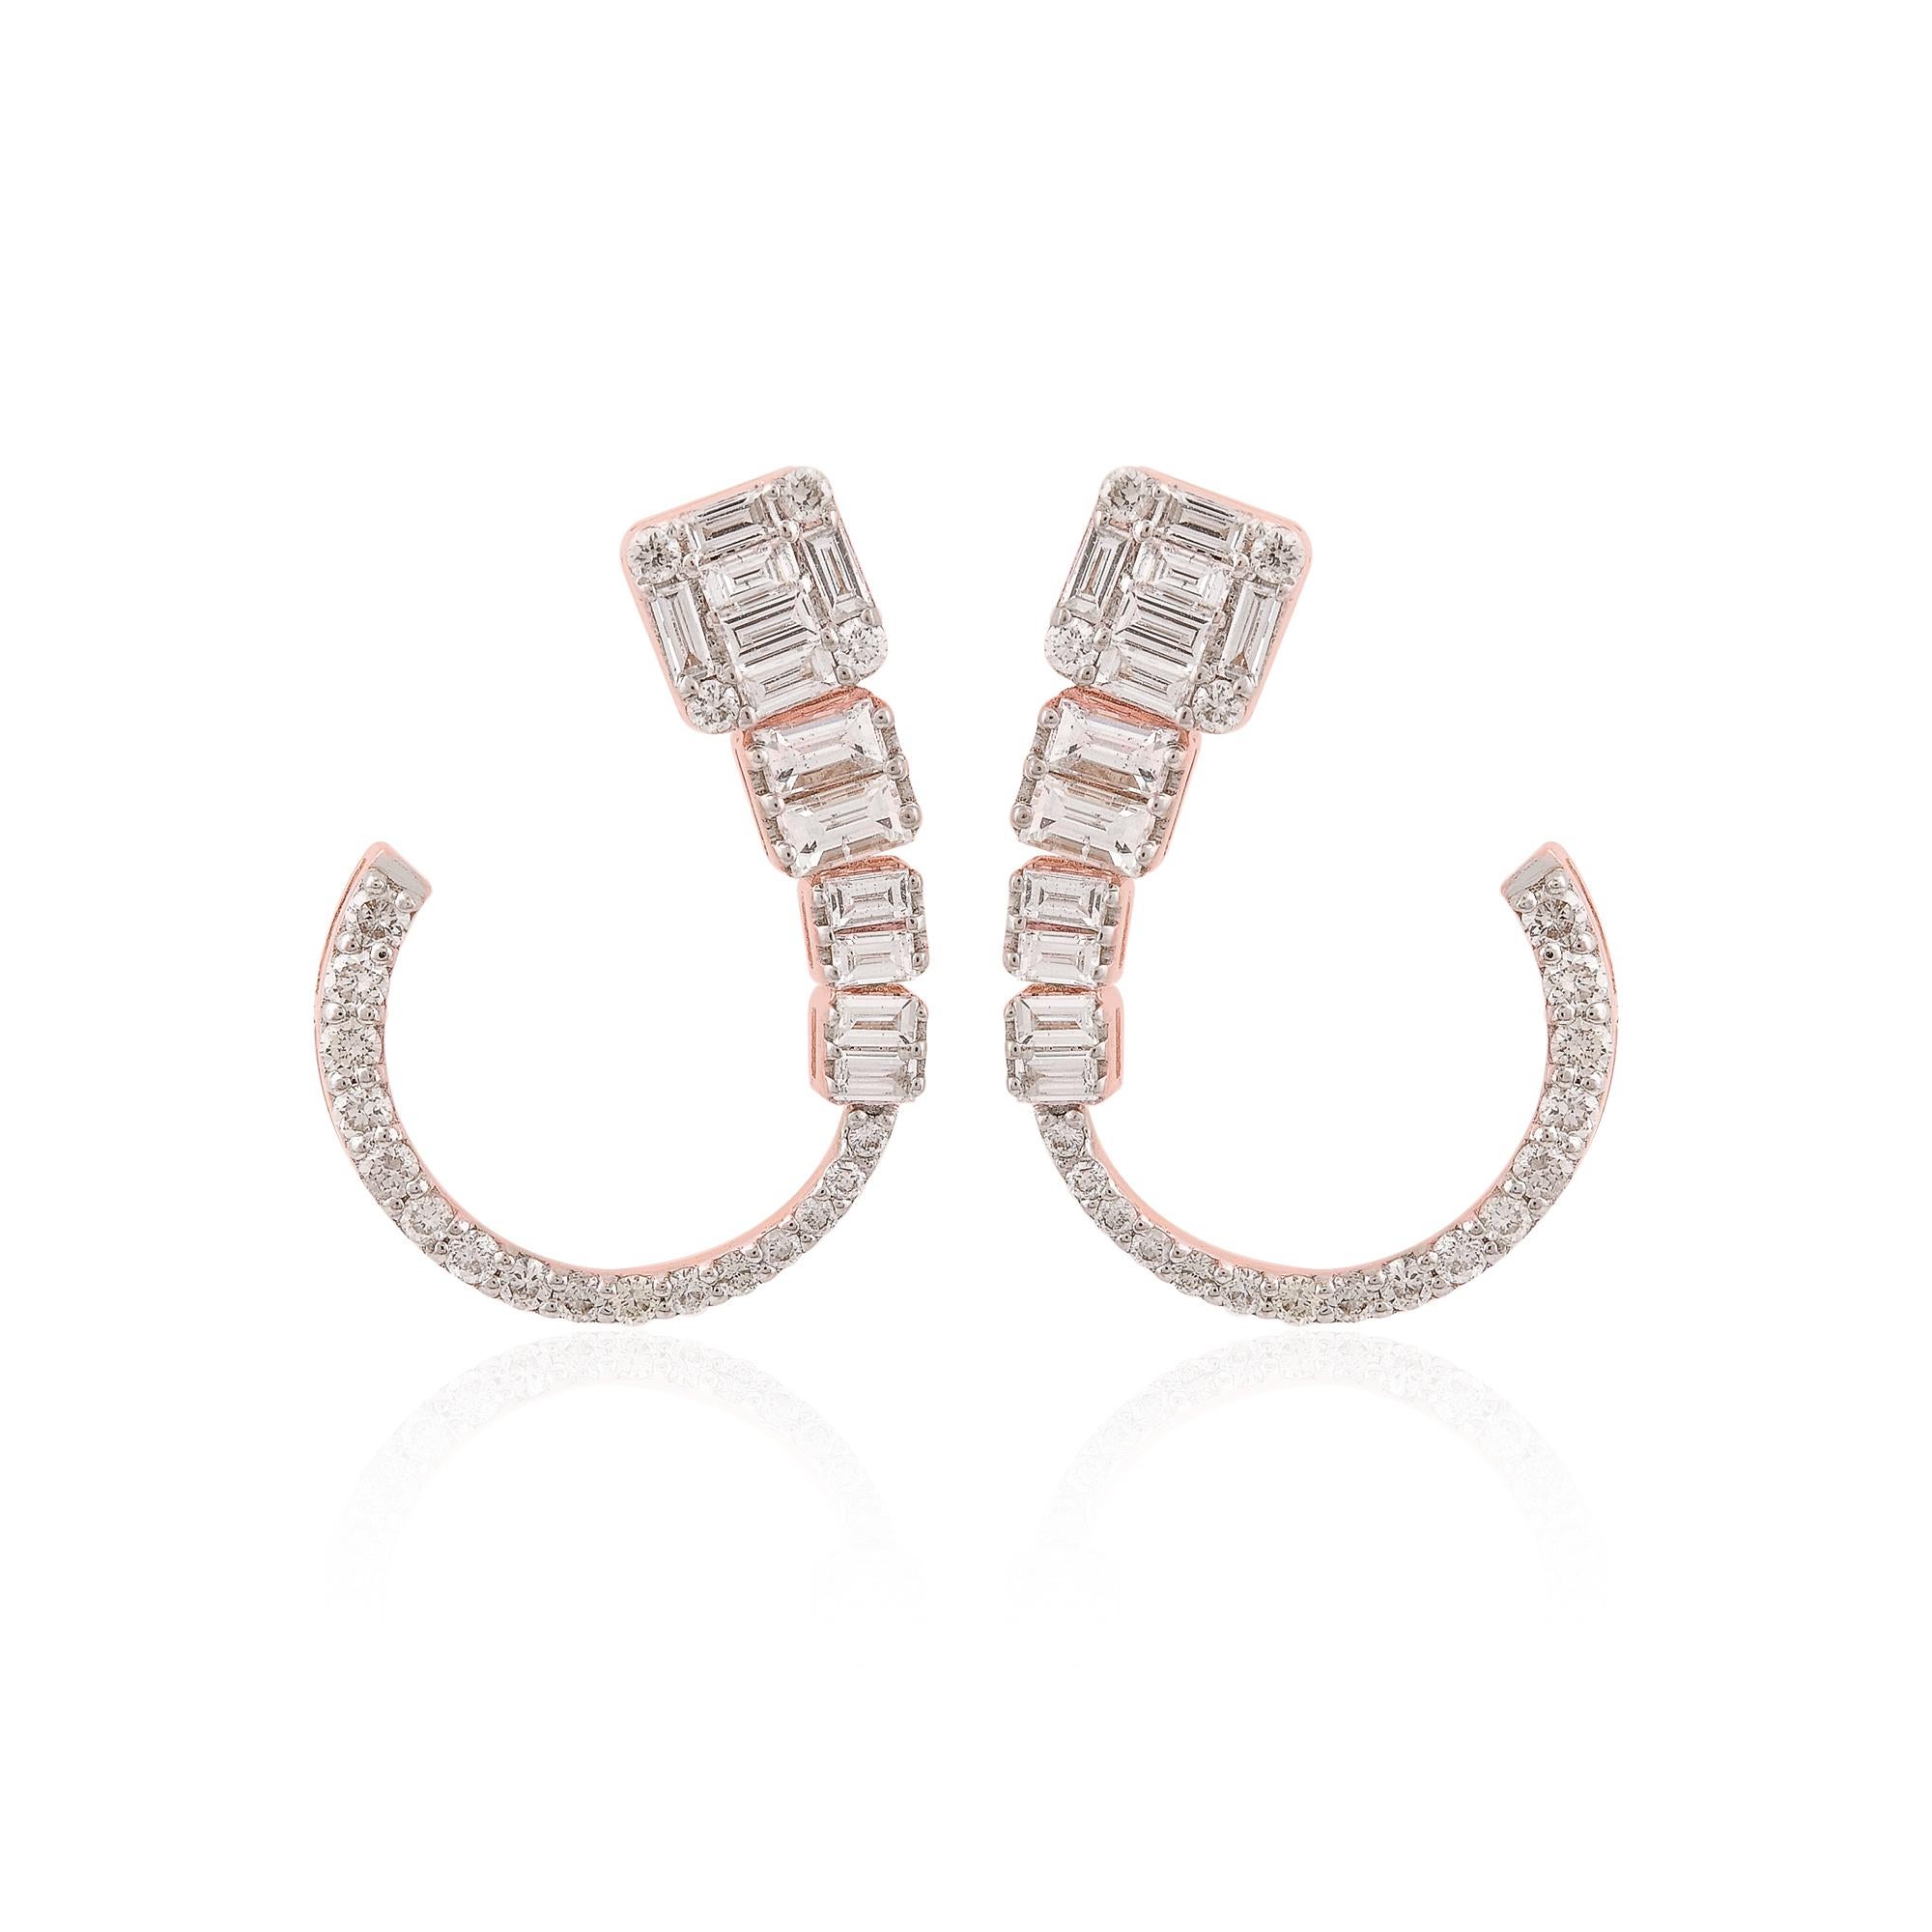 Diese mit Präzision und Sachverstand gefertigten Ohrringe sind nicht nur ein Symbol für zeitlose Schönheit, sondern auch ein Beweis für hervorragende Handwerkskunst. Die Fassung aus 18-karätigem Roségold bildet einen warmen und strahlenden